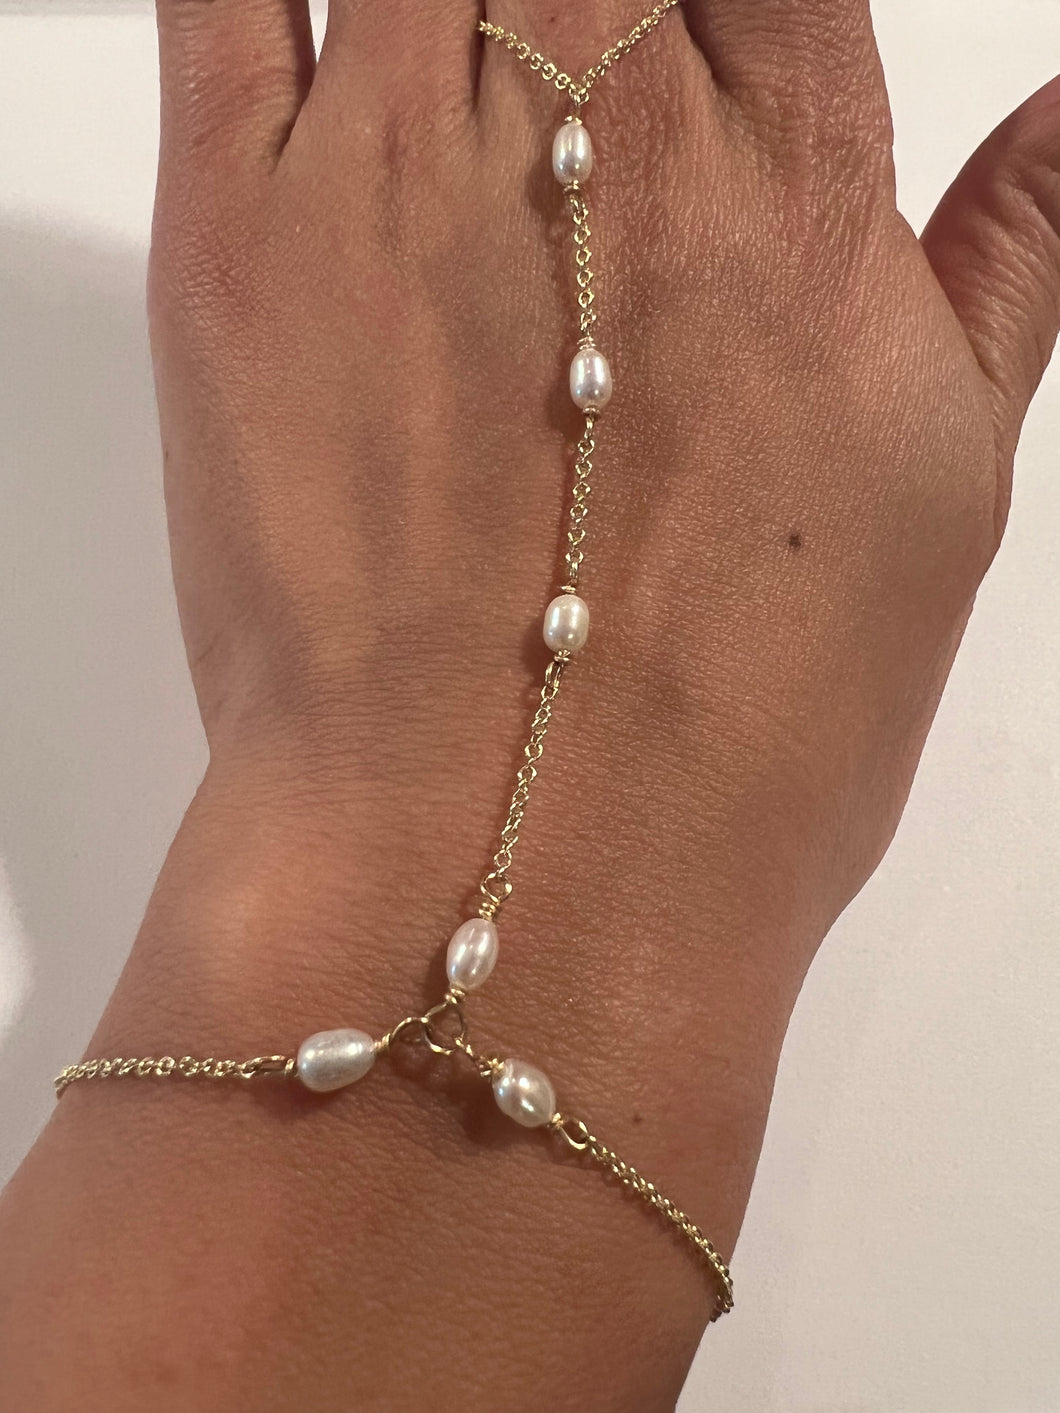 Alexandra Hand chain, ring, bracelet